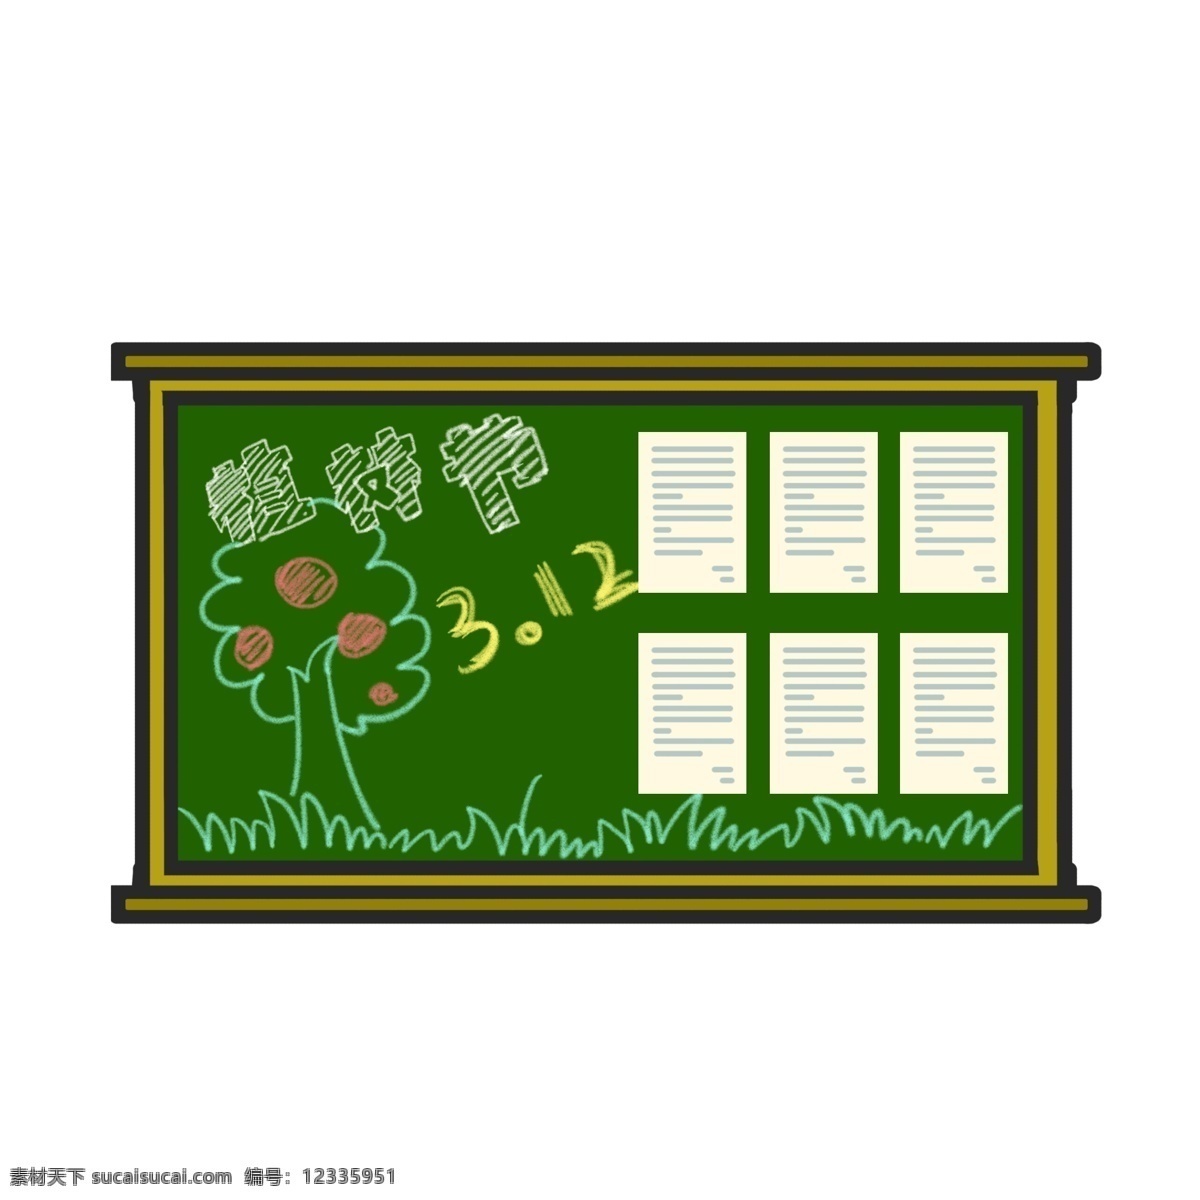 植树节 绿色 黑板 插画 绿色的黑板 手绘黑板 植树节黑板 3月12日 植树节黑板报 节日 植树节插画